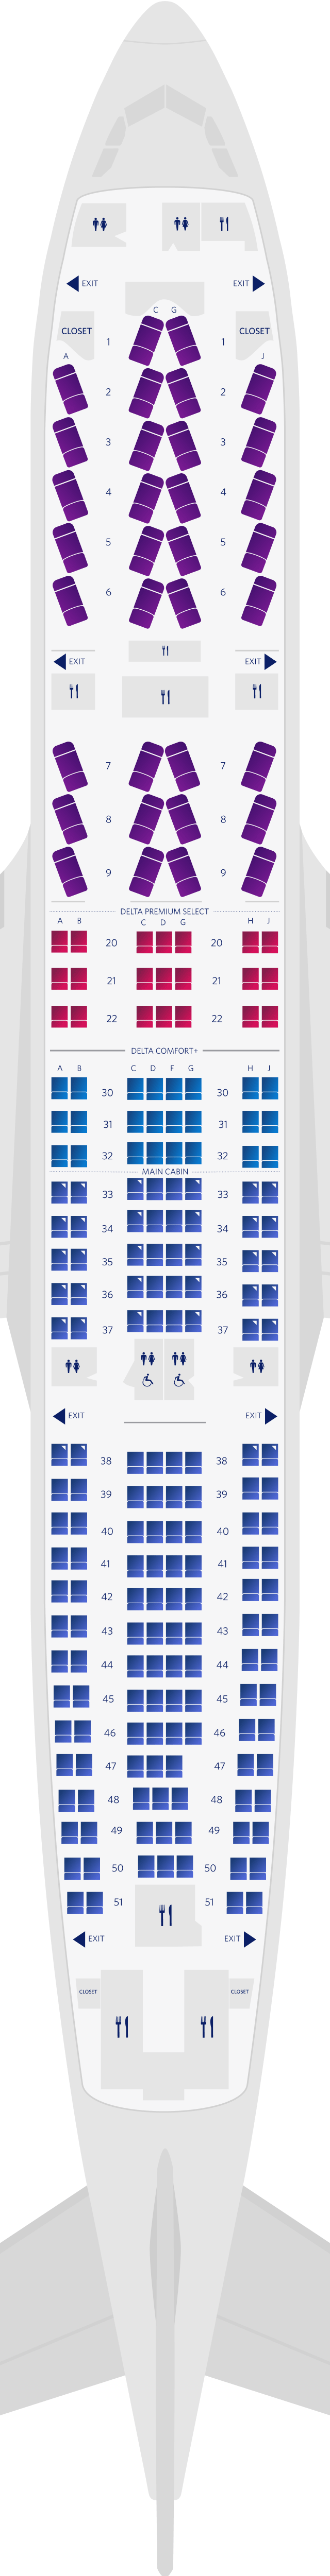 空客A330-200 4机舱座位图